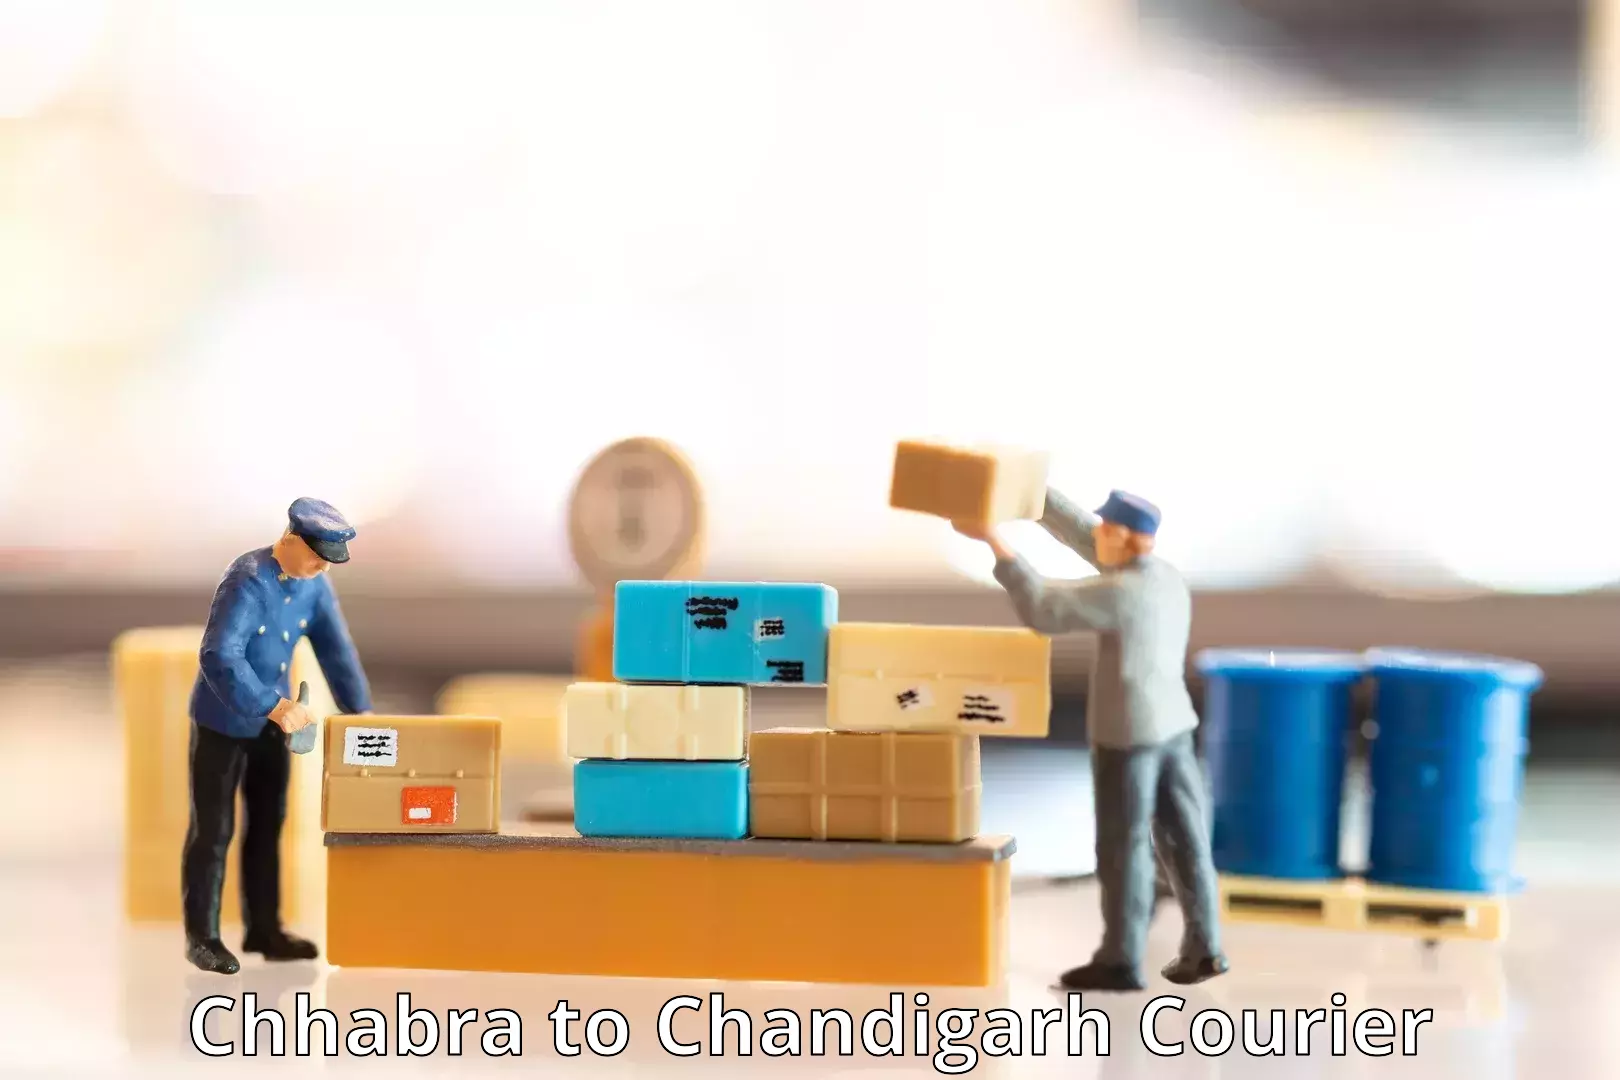 Efficient freight service Chhabra to Chandigarh